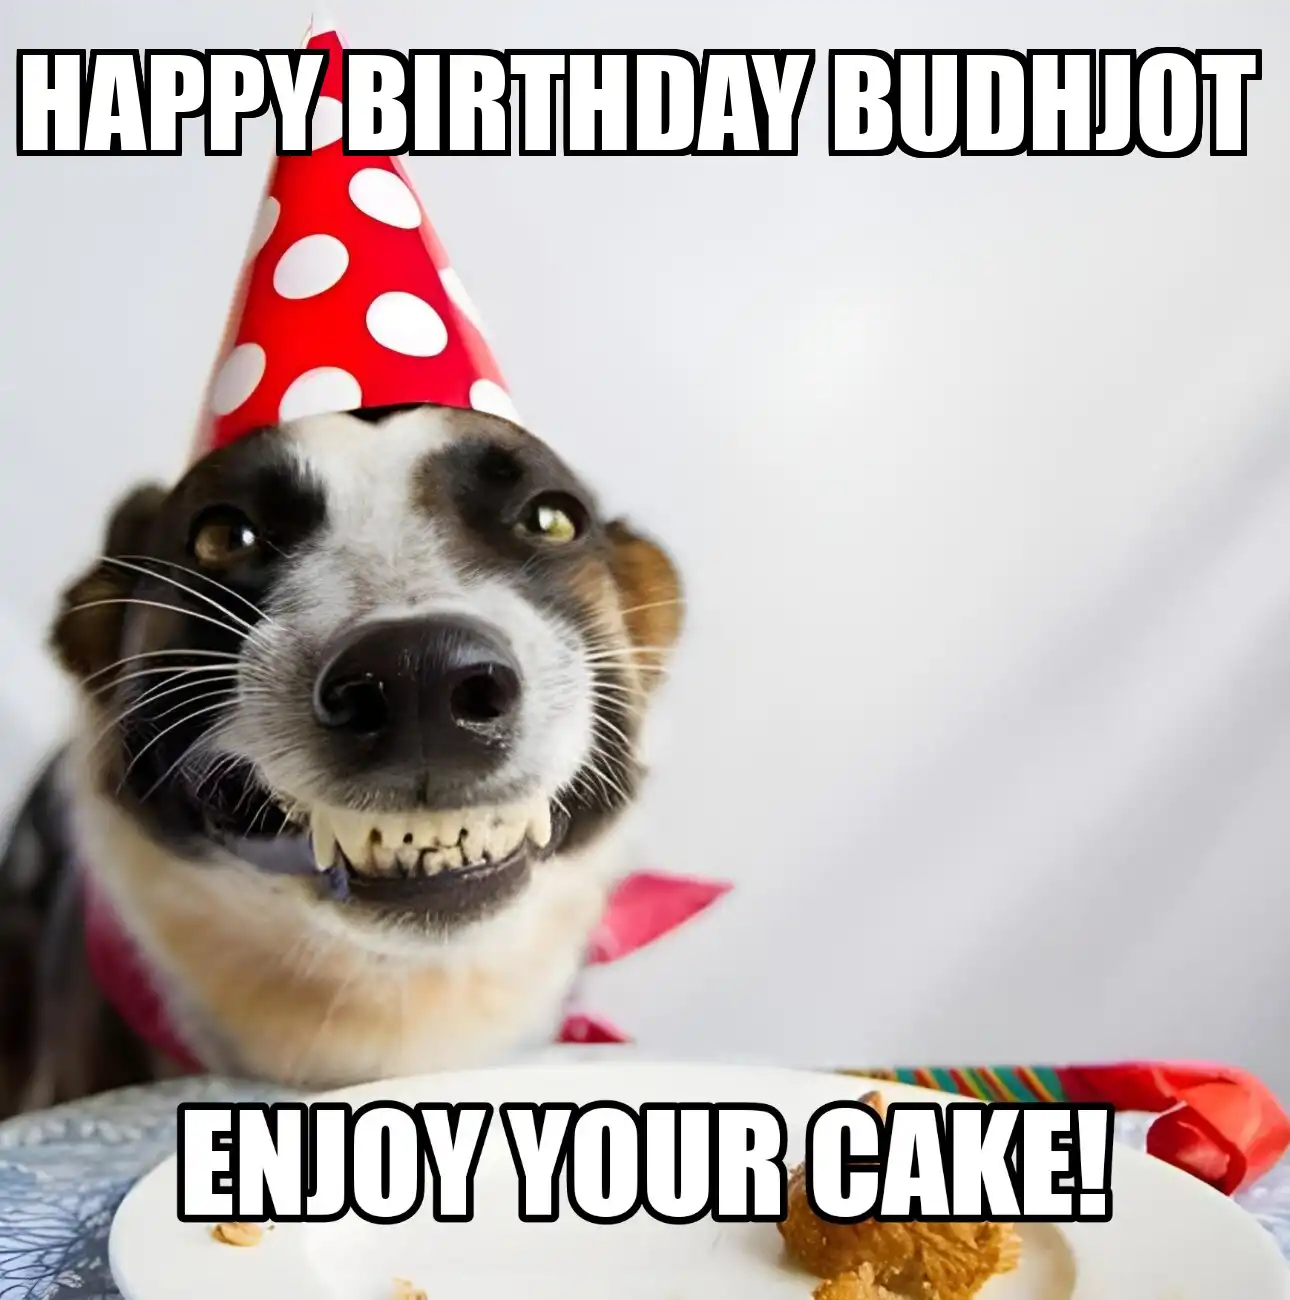 Happy Birthday Budhjot Enjoy Your Cake Dog Meme